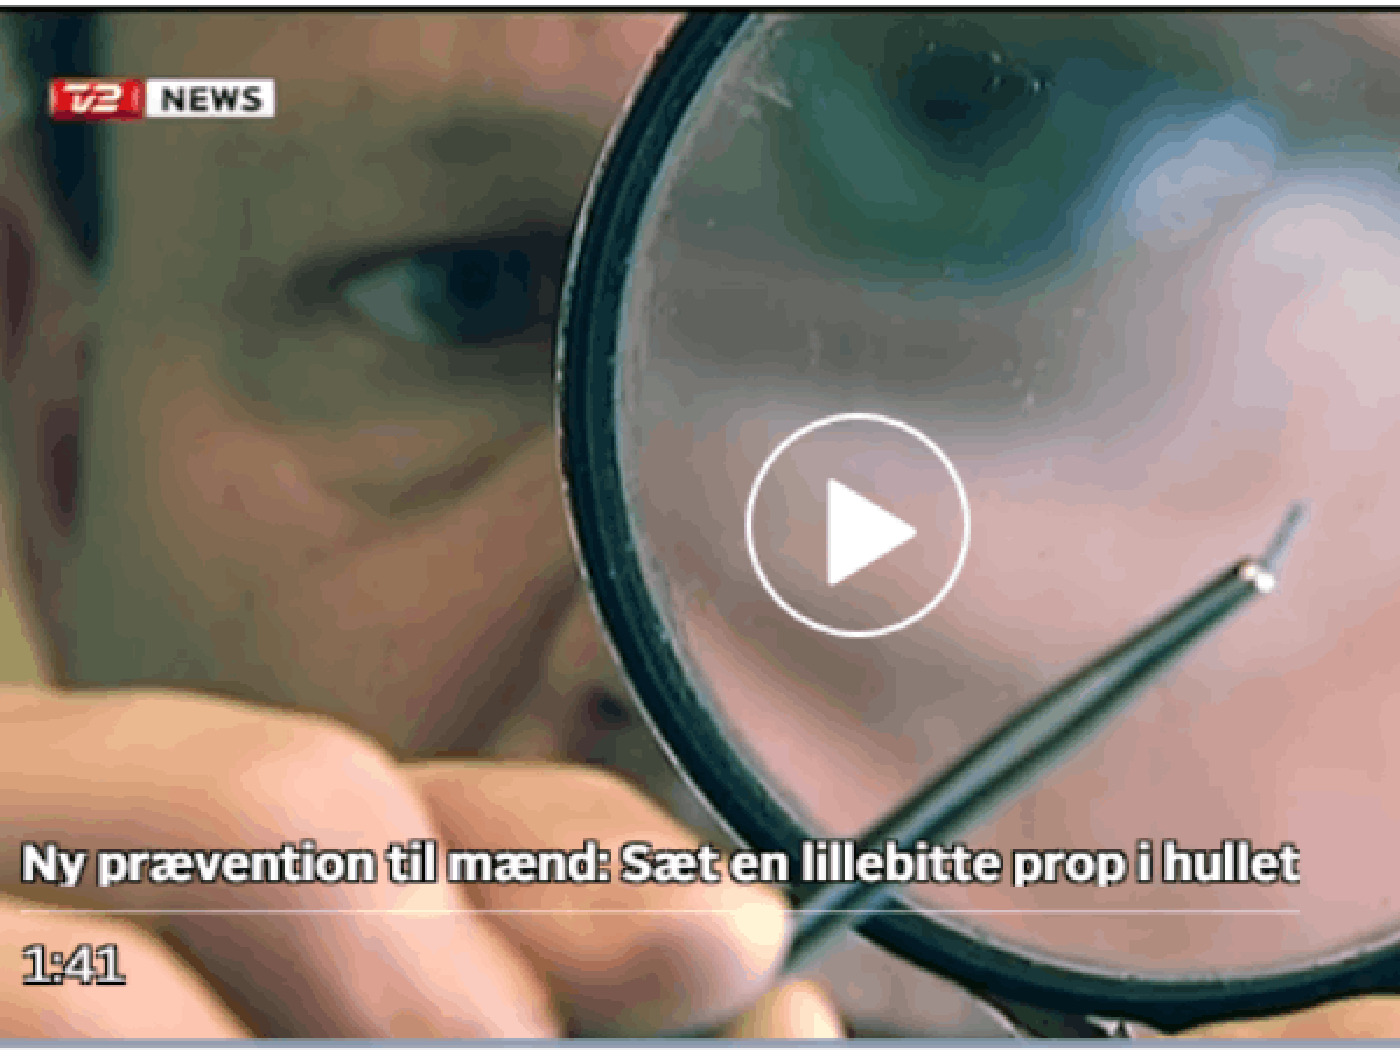 inventor Niel Lindeburg is interviewed for Danish tv TV2 Nyhederne